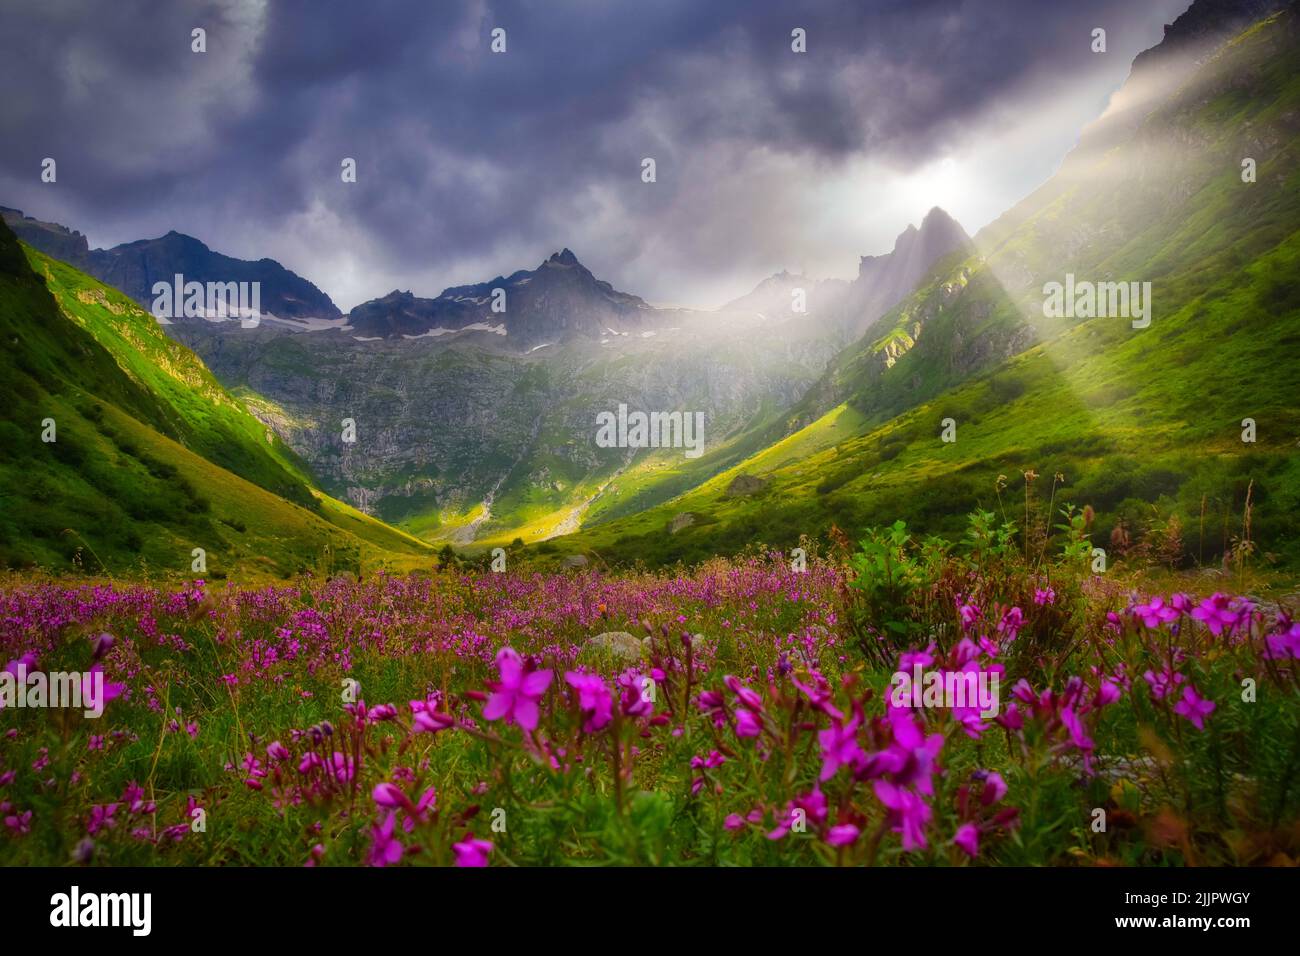 Wildflowers growing in an alpine meadow in summer, Meiental, Uri, Switzerland Stock Photo